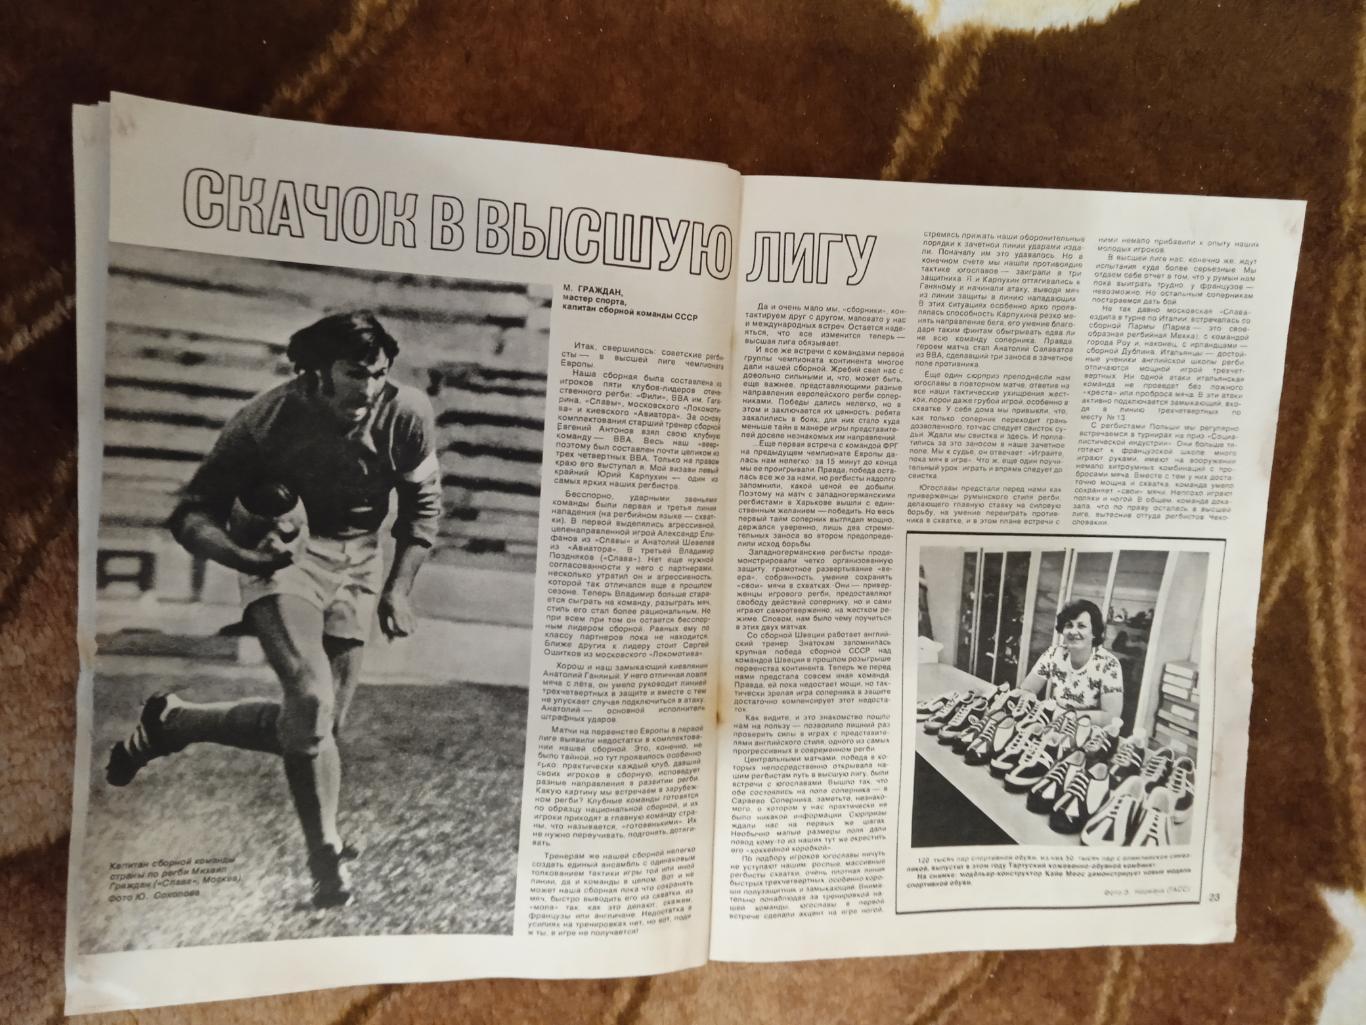 Журнал.Спортивные игры № 11 1978 г.Футбол,хоккей,волейбол,регби.ЧМ 78 Аргентина. 5